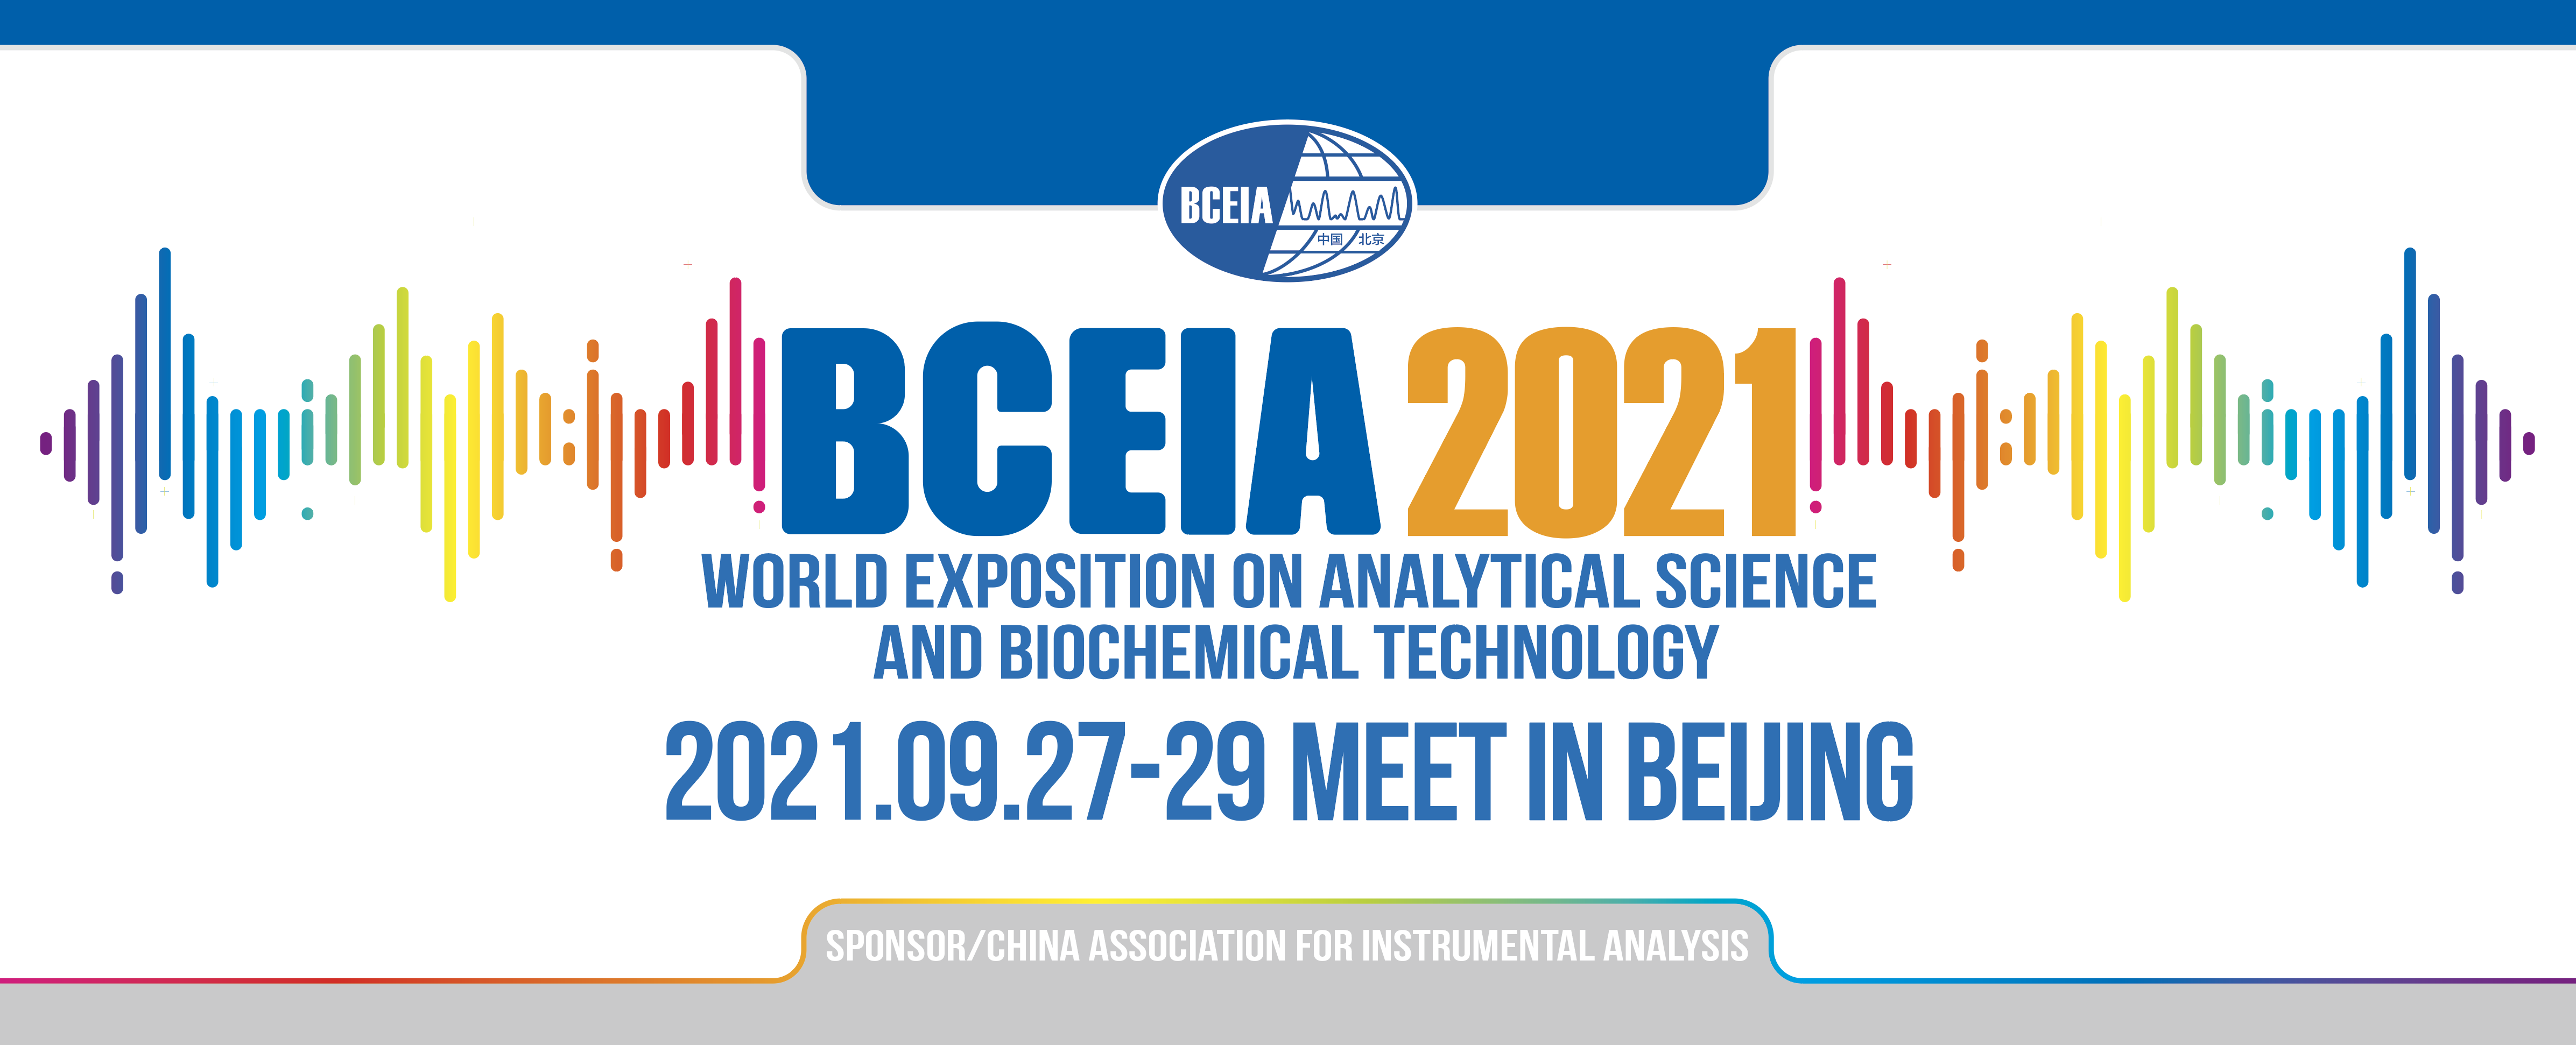 Parodoje dalyvavo 19-oji Pekino instrumentinės analizės konferencija ir paroda (BCEIA 2021)-Shanghai Ruifu Chemical Co., Ltd.